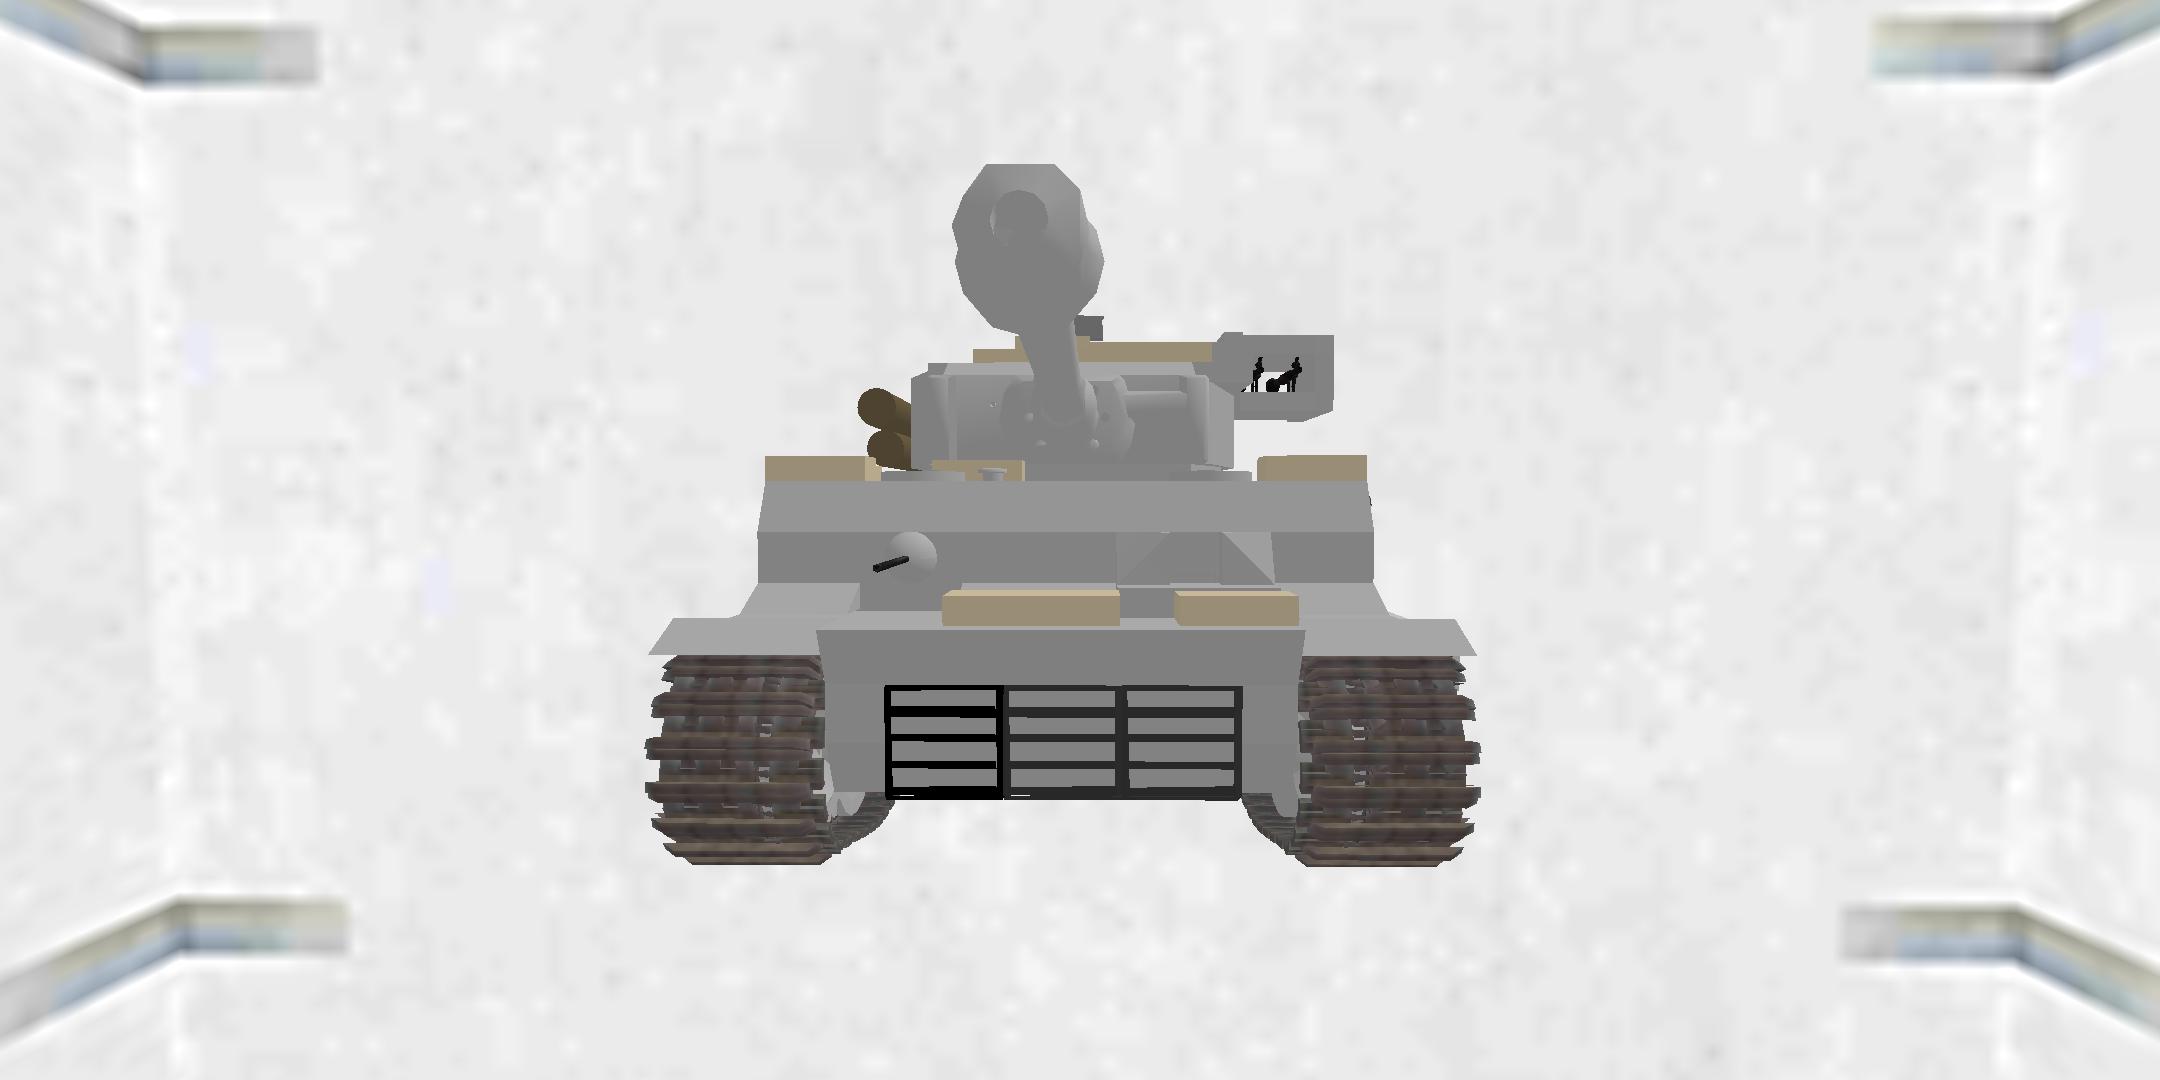 Tiger I(mod 1945 I)